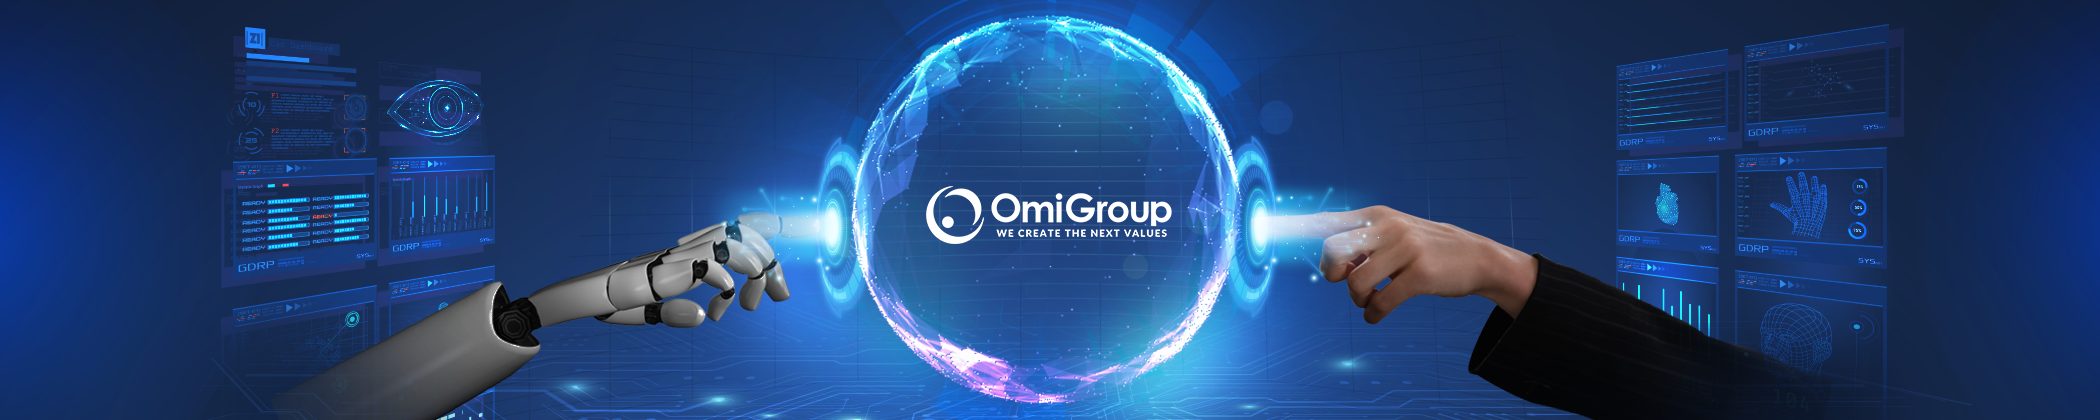 Công ty Cổ phần Tập đoàn Omi (OmiGroup)